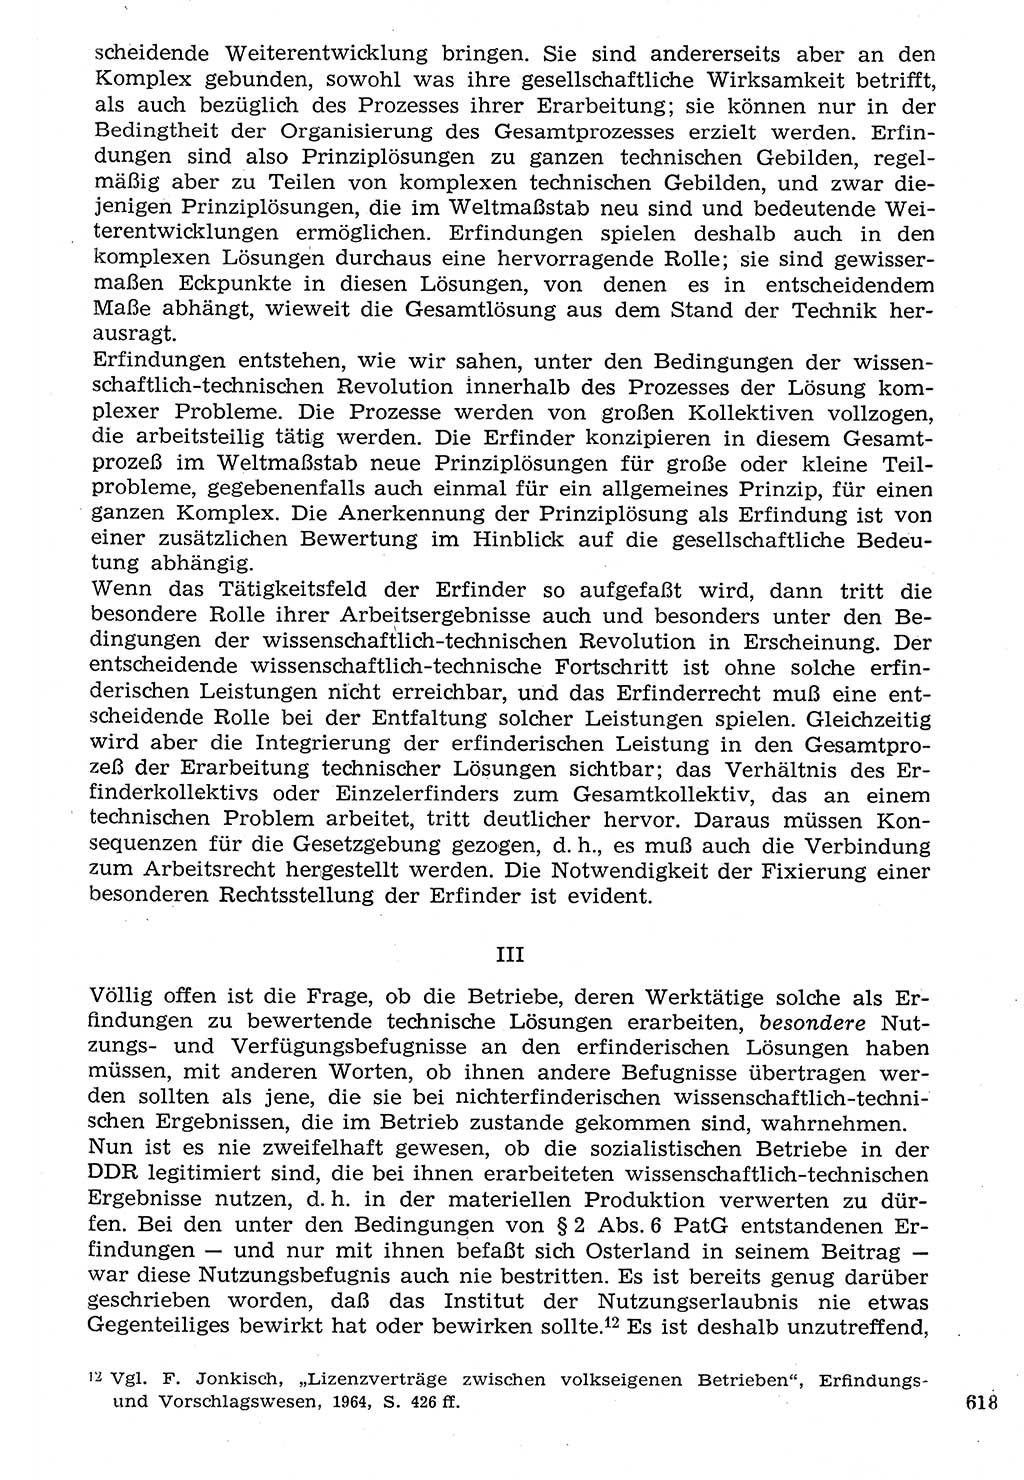 Staat und Recht (StuR), 17. Jahrgang [Deutsche Demokratische Republik (DDR)] 1968, Seite 618 (StuR DDR 1968, S. 618)